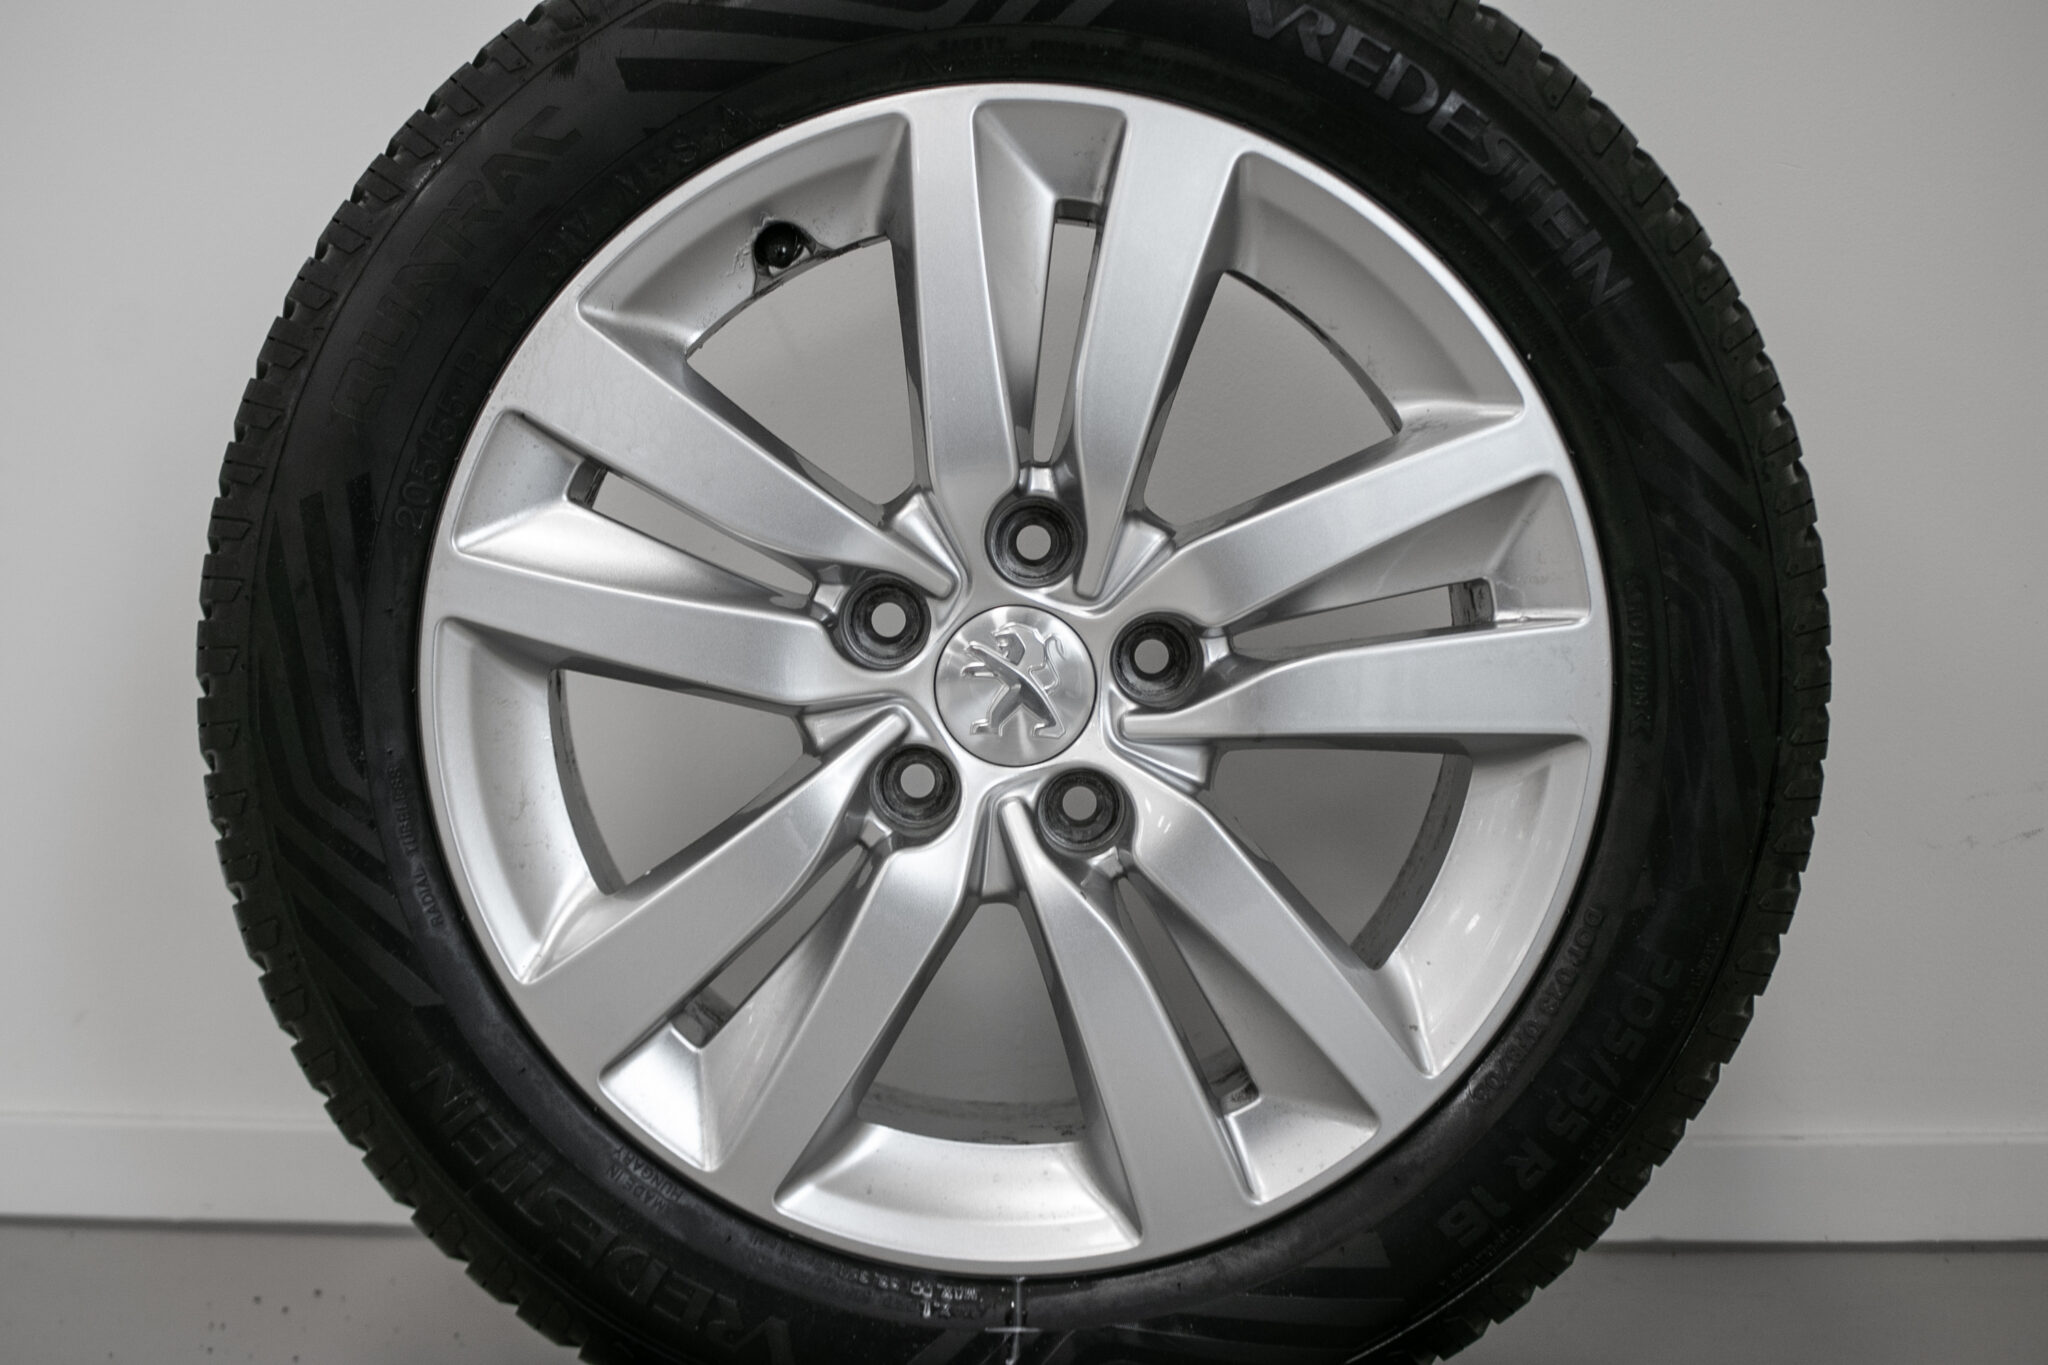 16″ allseasonwielen voor de Peugeot 308 / 308SW  2014 -
€595,-
Gebruikt. Profieldiepte: 6.0mm - 7.0mm